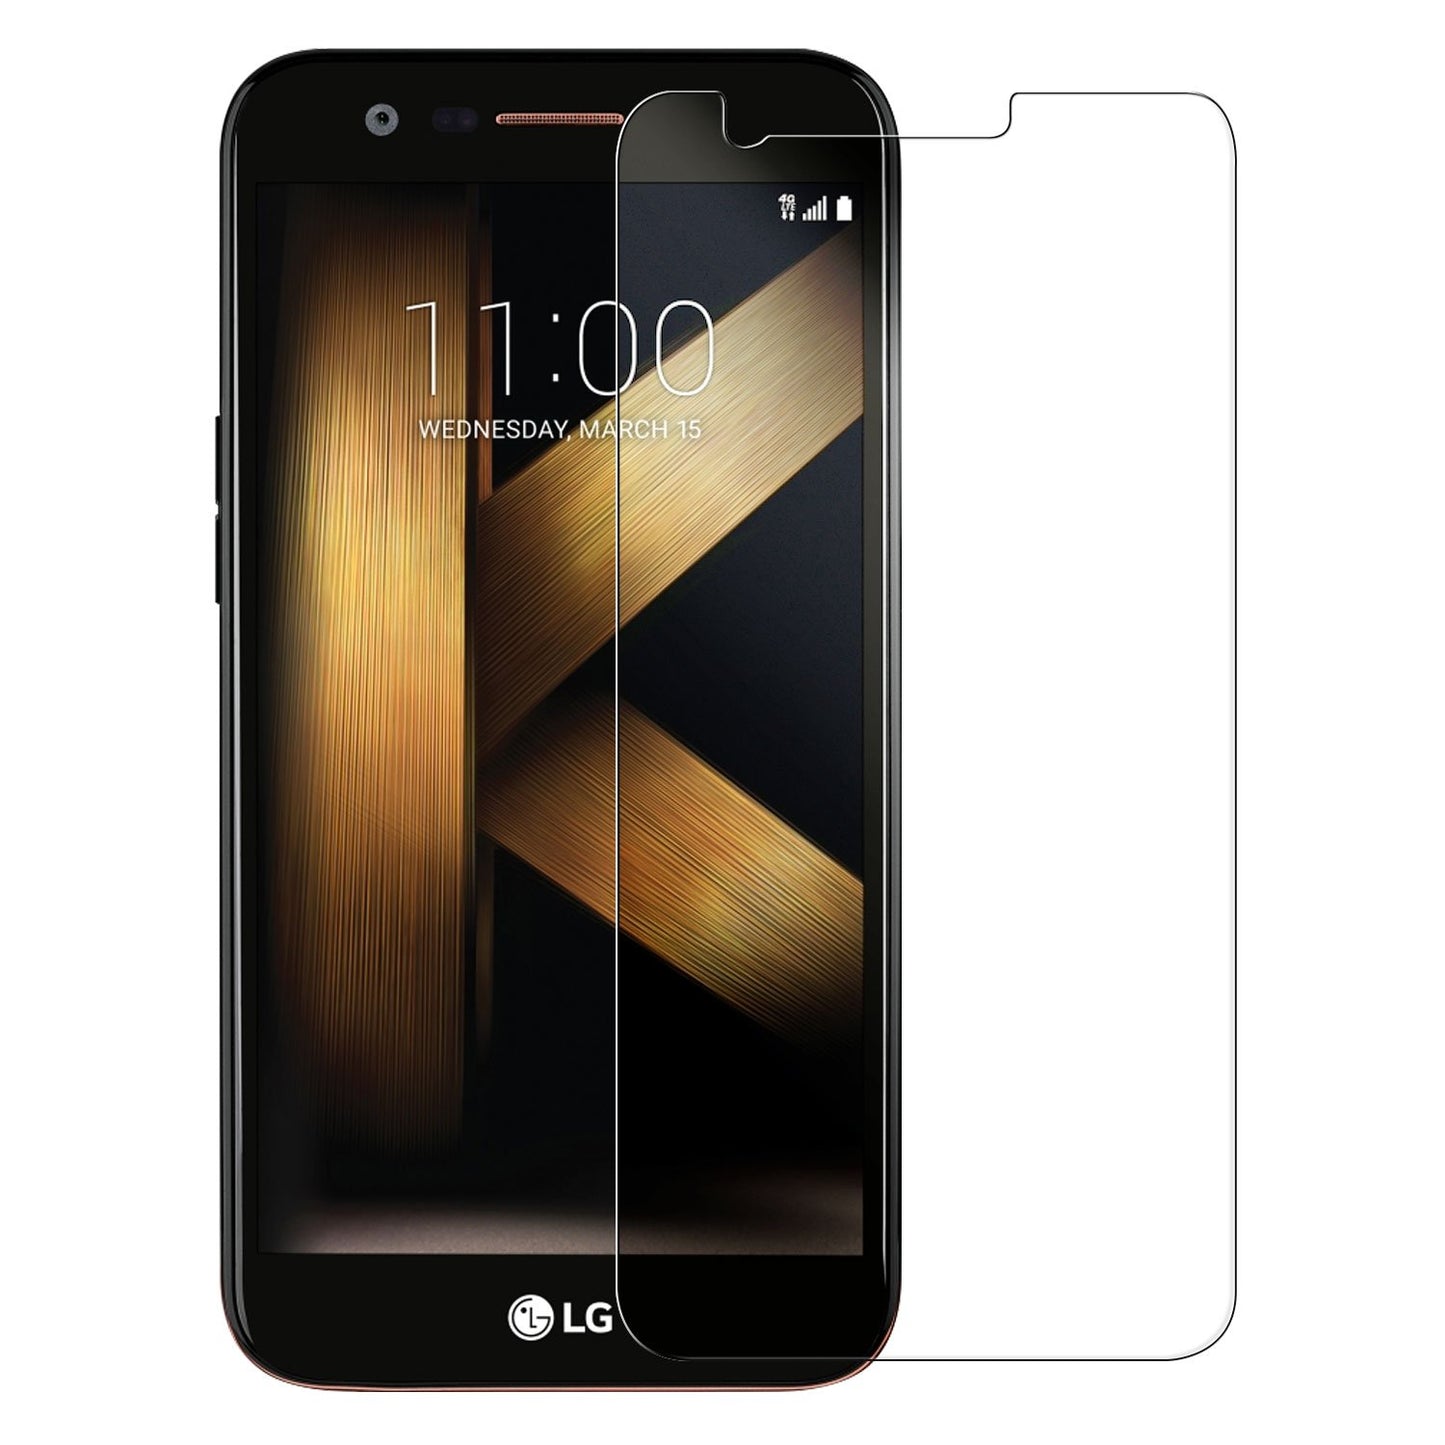 SGLGK20 - LG K20 Tempered Glass Screen Protector, Cellet 0.33mm Premium Tempered Glass Screen Protector for LG K20 (9H Hardness)